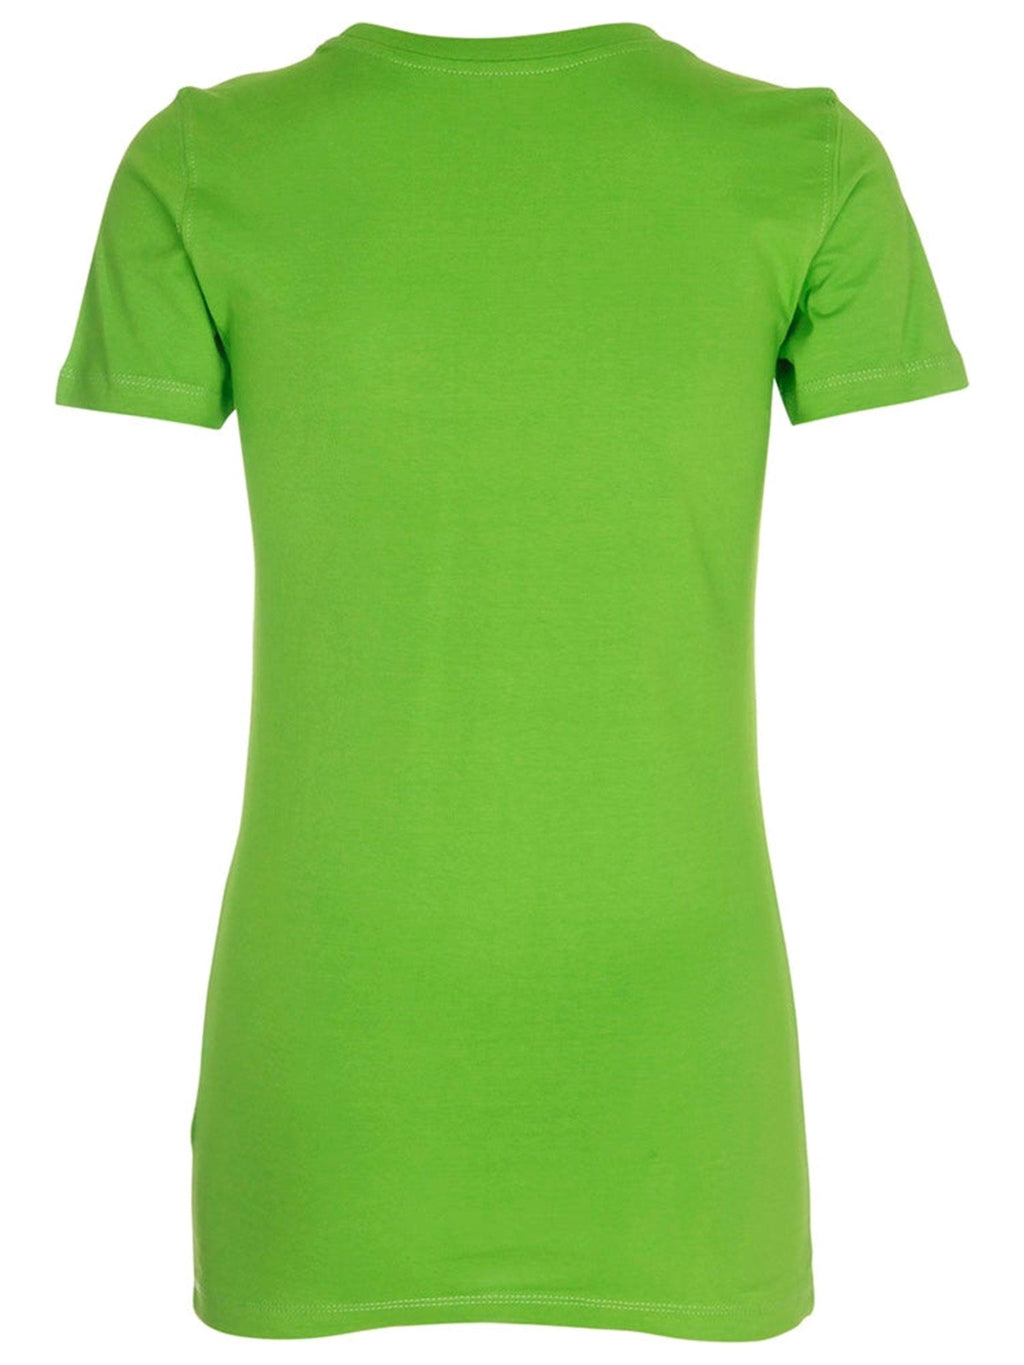 Įrengti marškinėliai - kalkių žalia